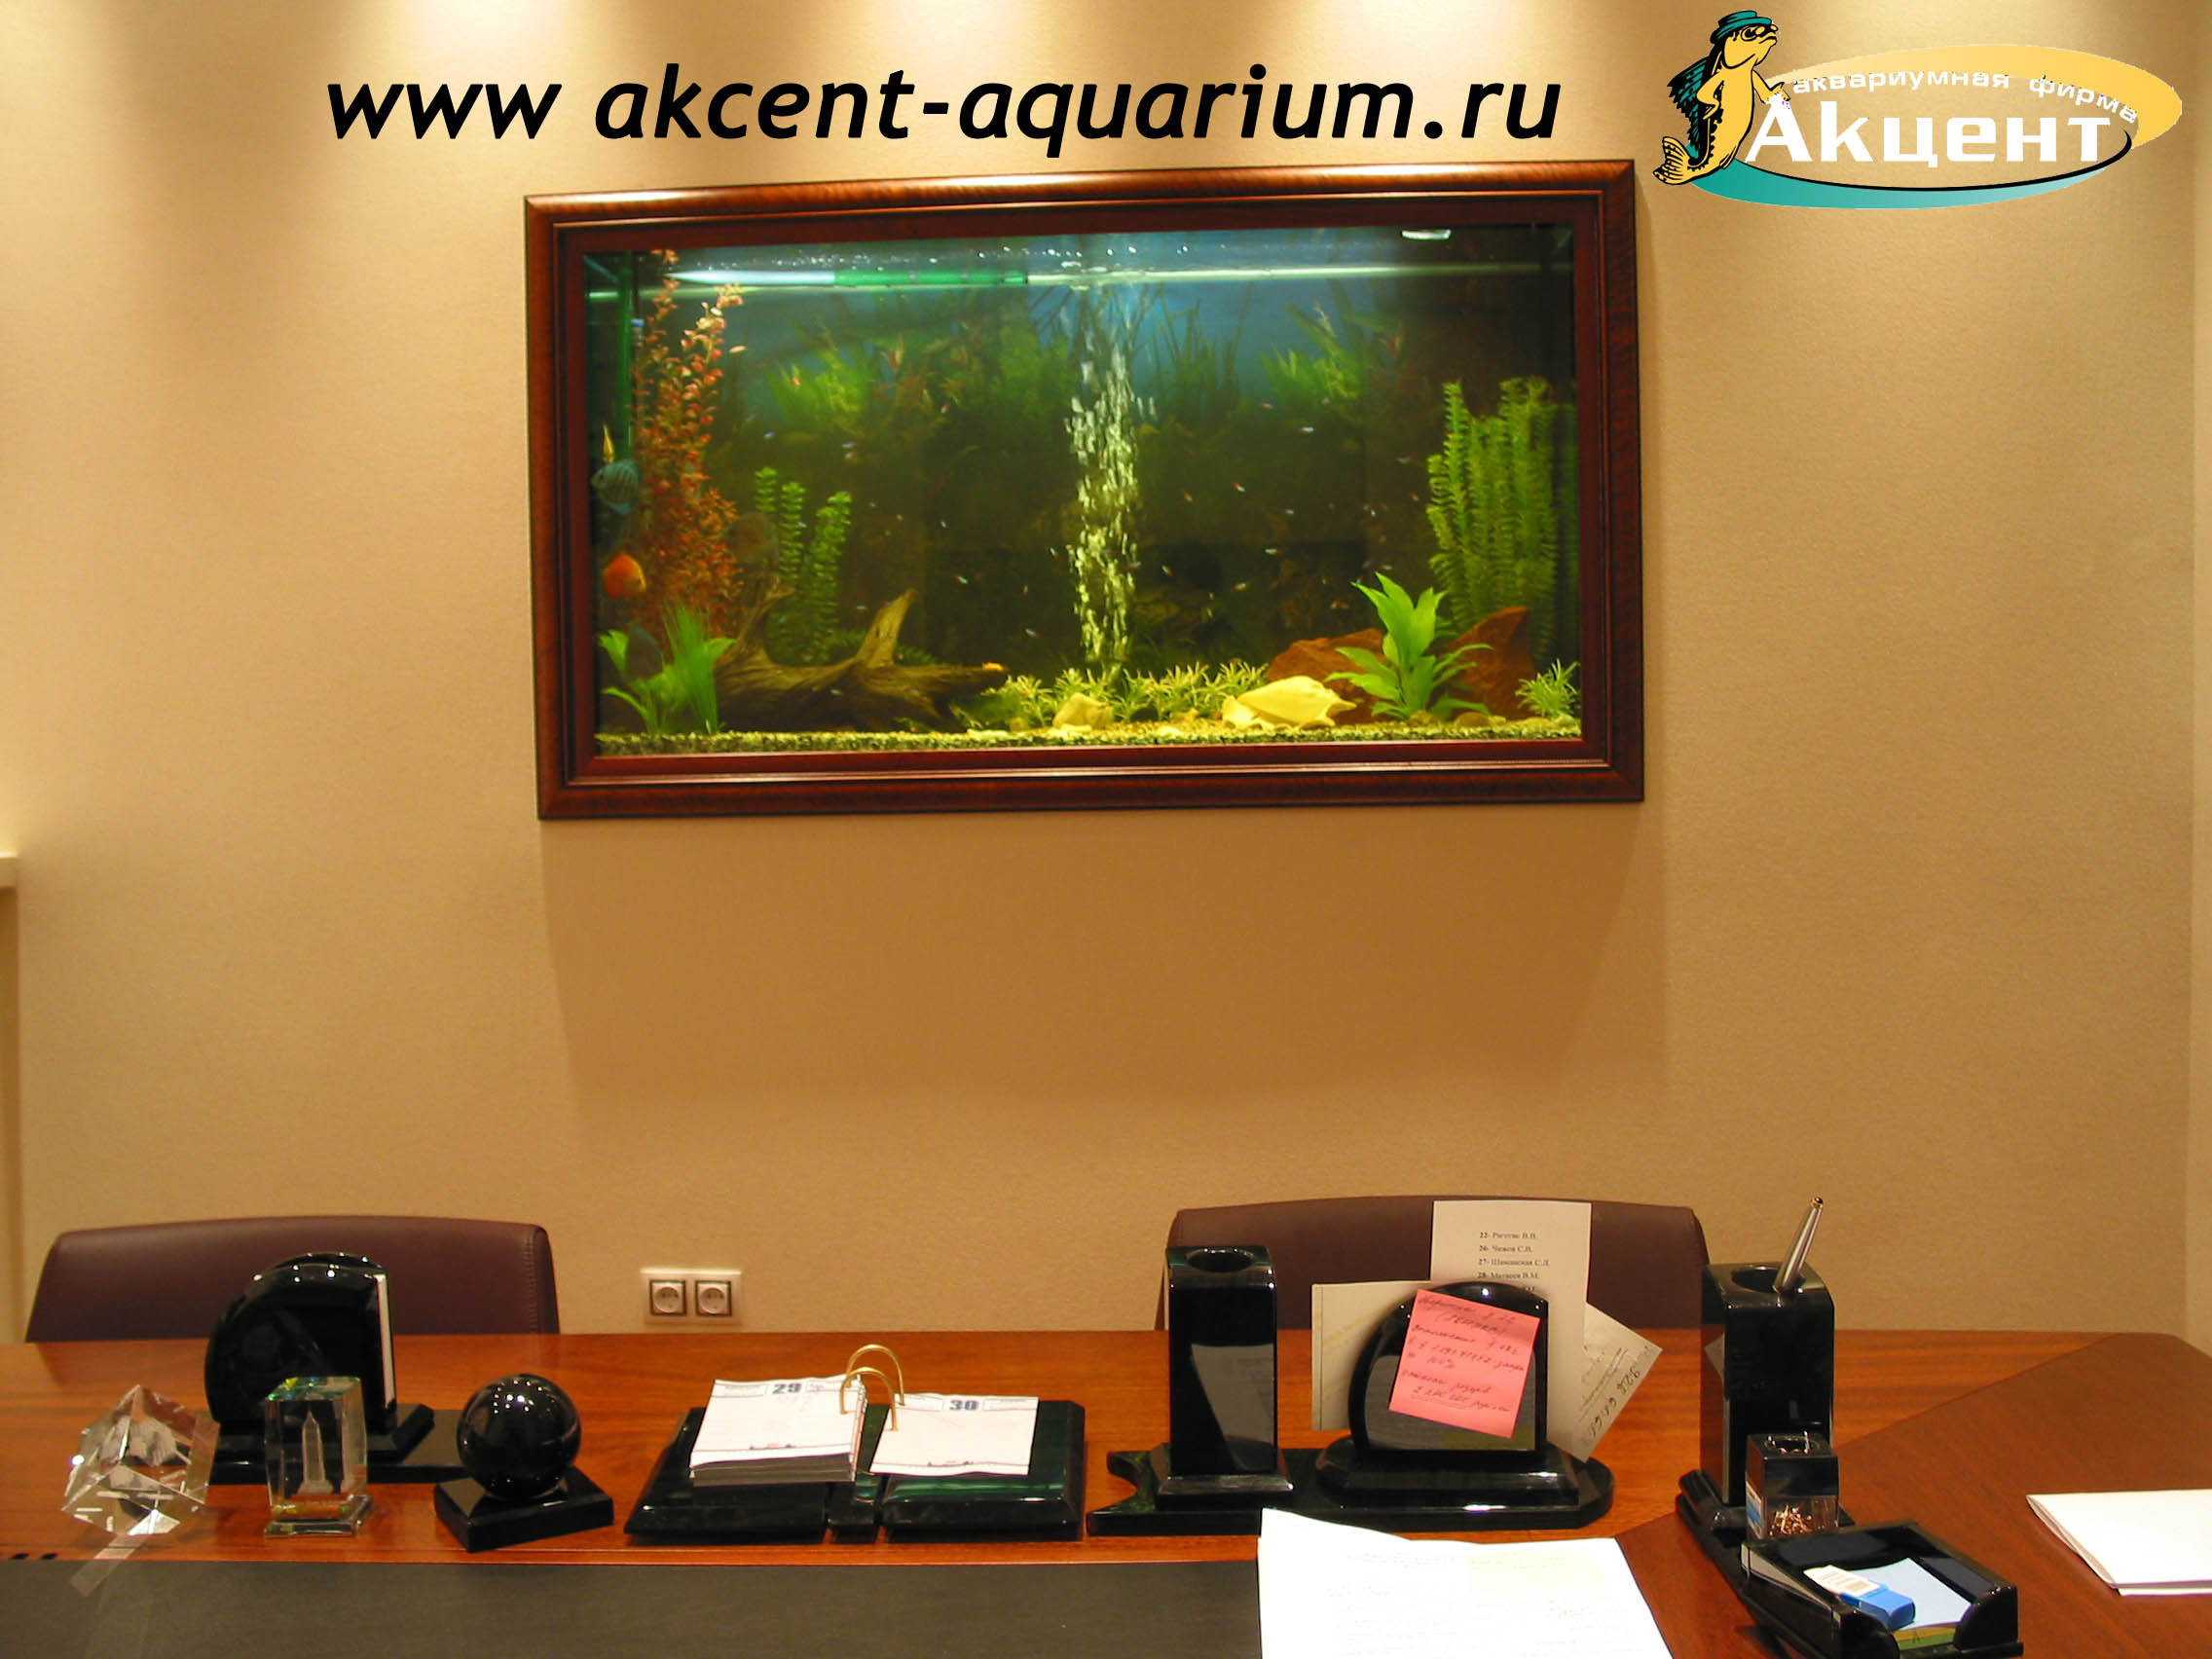 Акцент-аквариум, аквариум 600 встроенный в стену